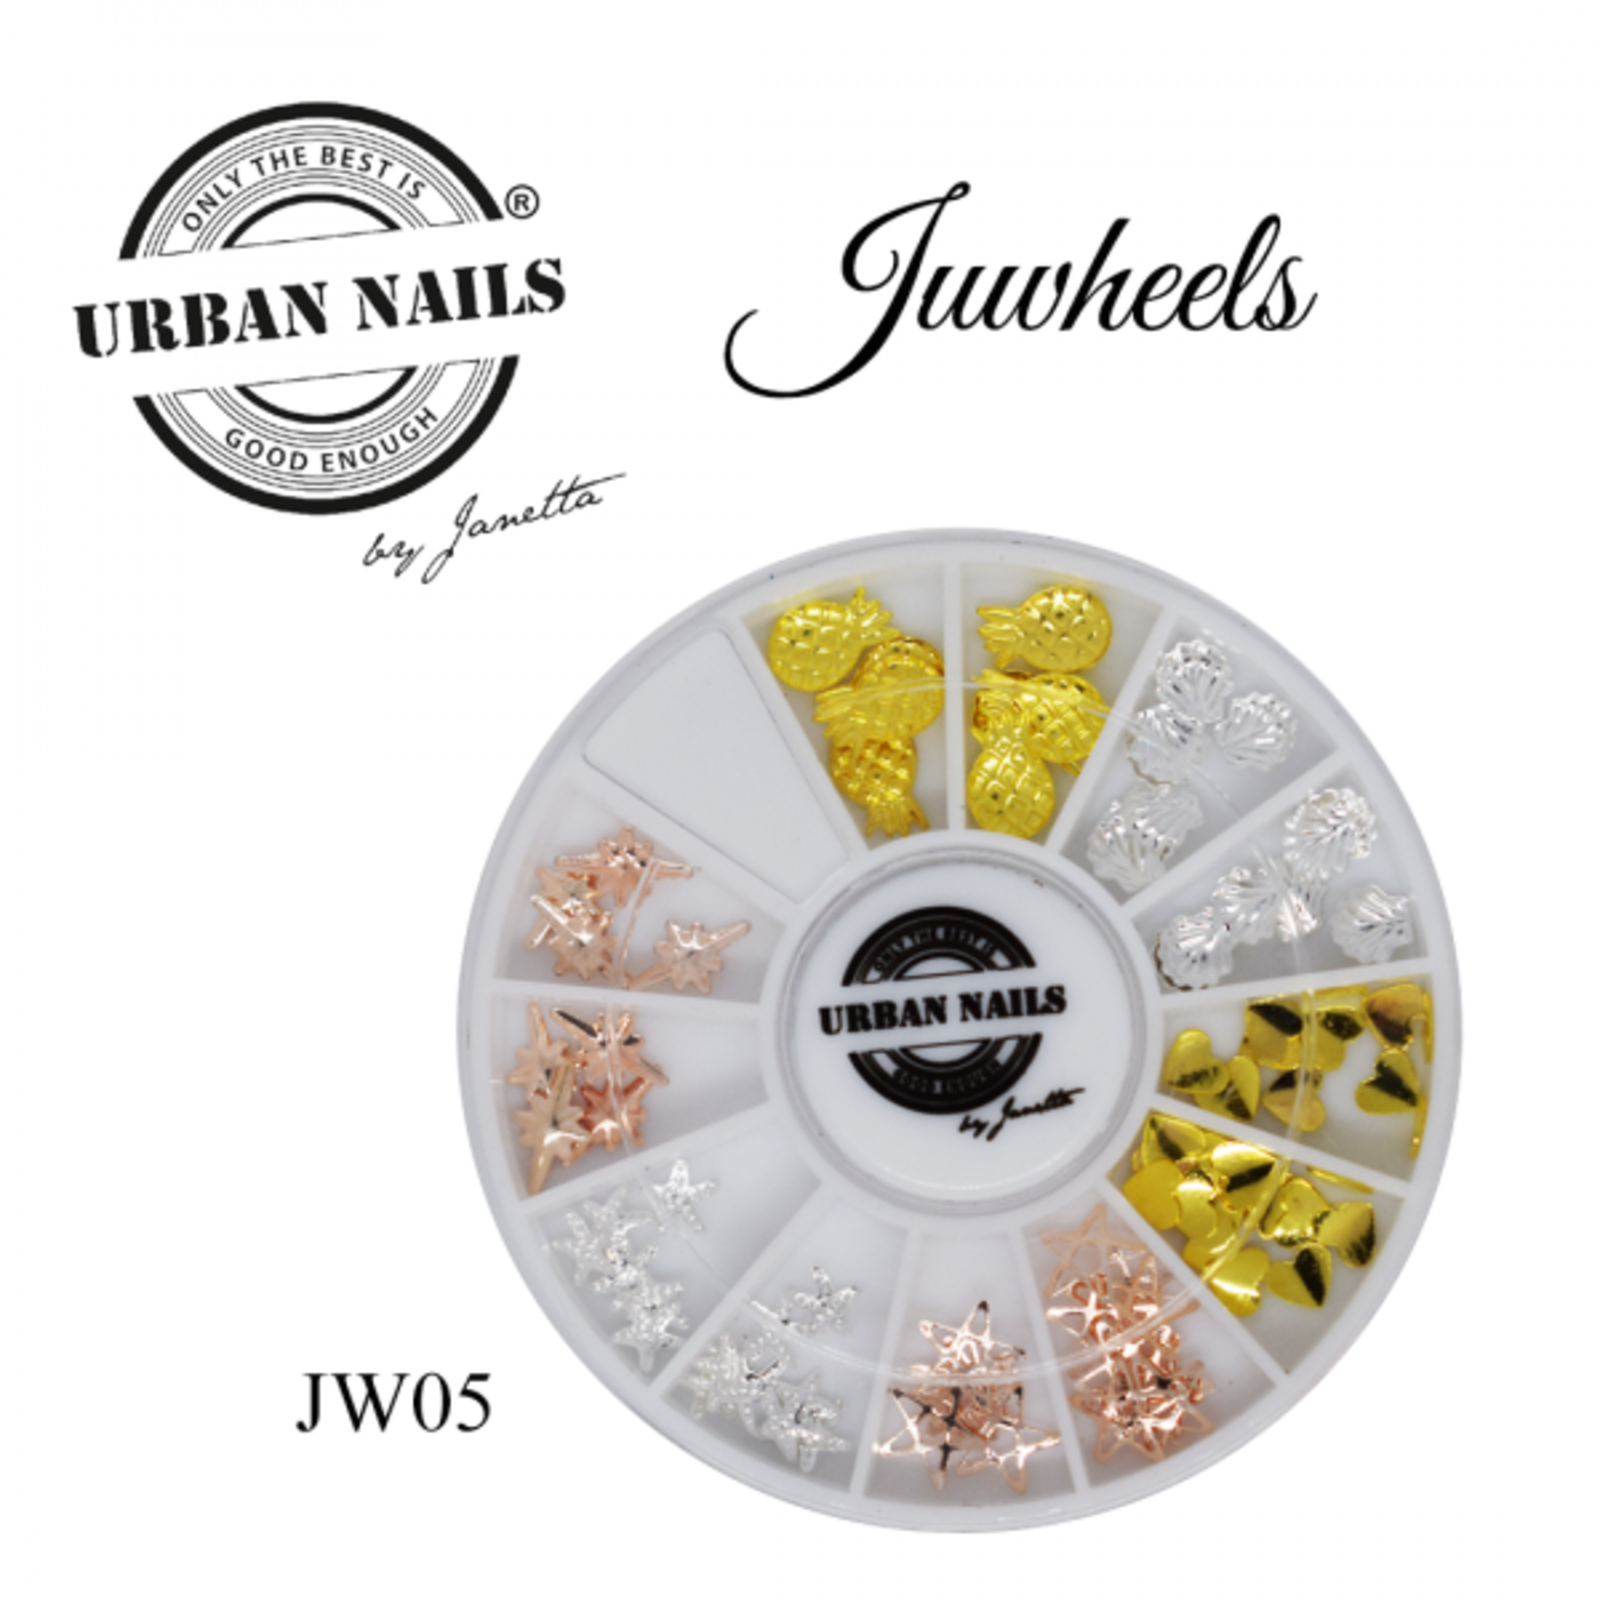 Urban nails Juwheel 05